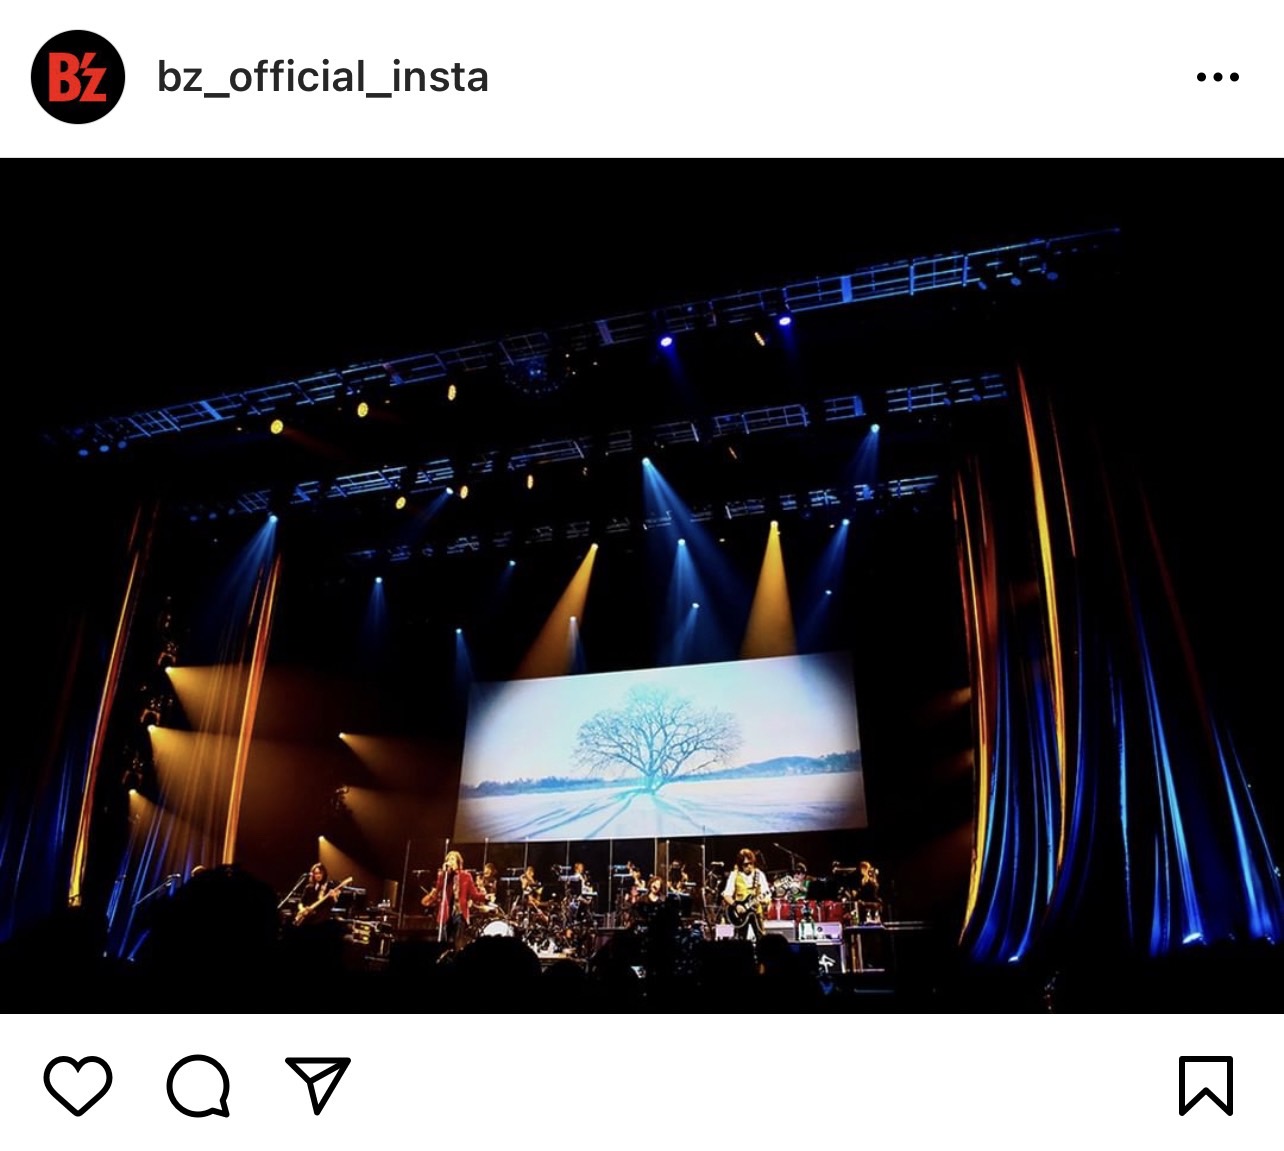 B'z公式Instagramで公開された『B’z presents LIVE FRIENDS』のステージ写真